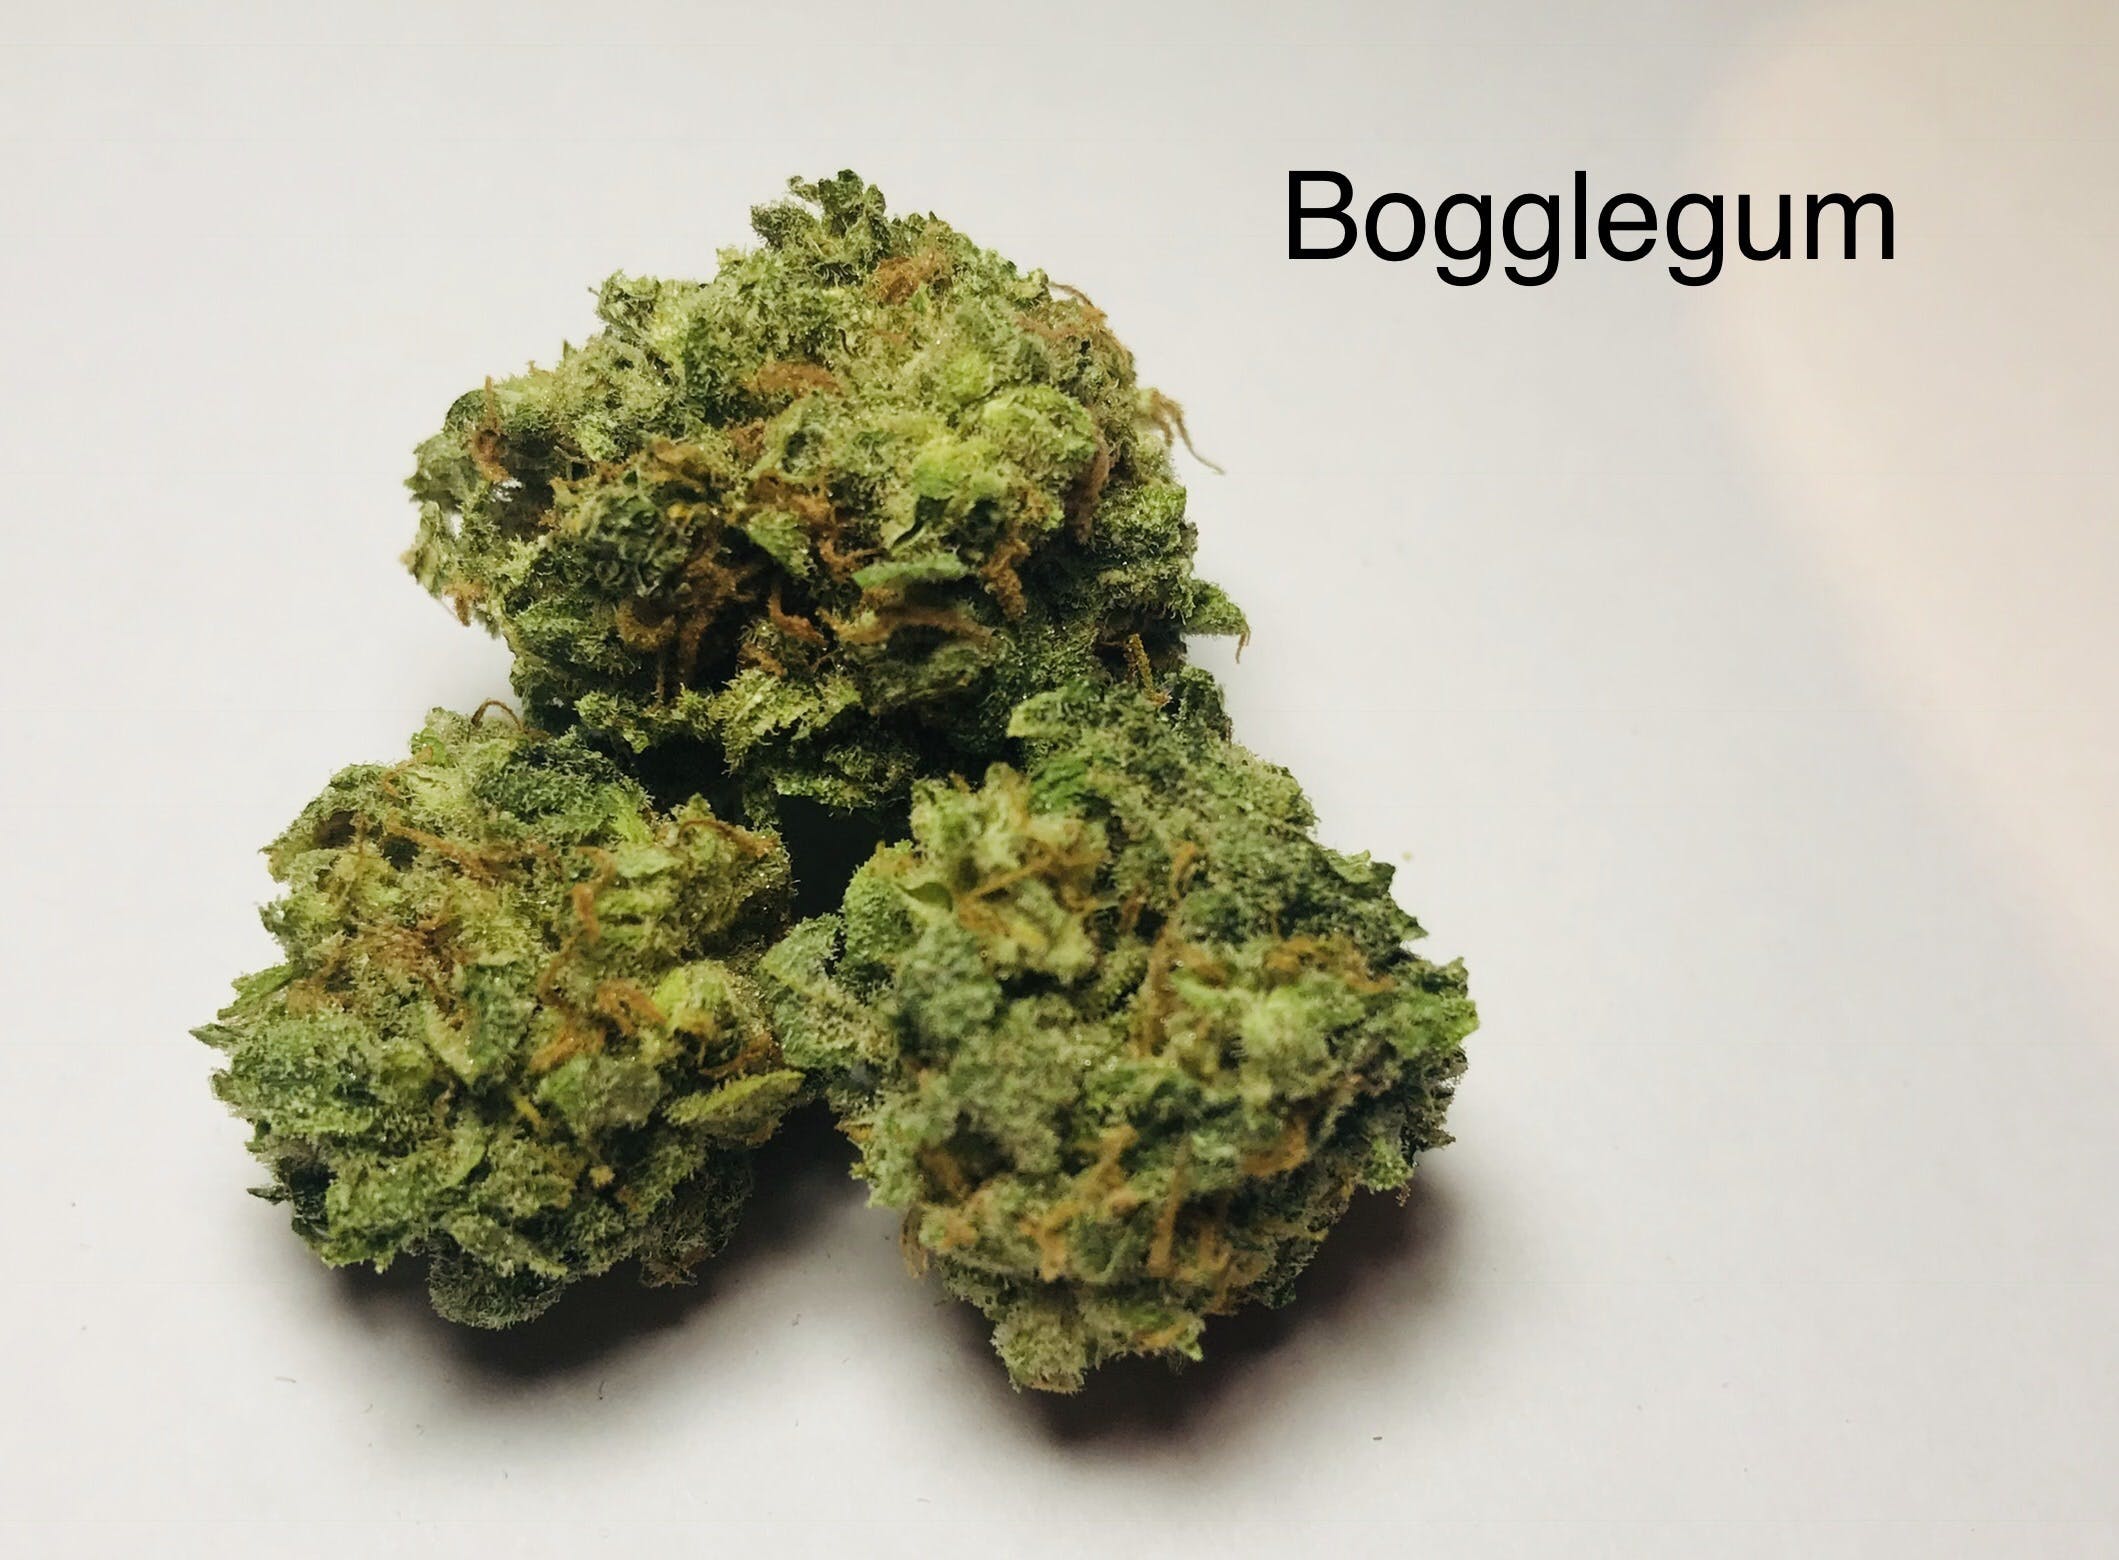 marijuana-dispensaries-the-green-source-in-colorado-springs-bogglegum